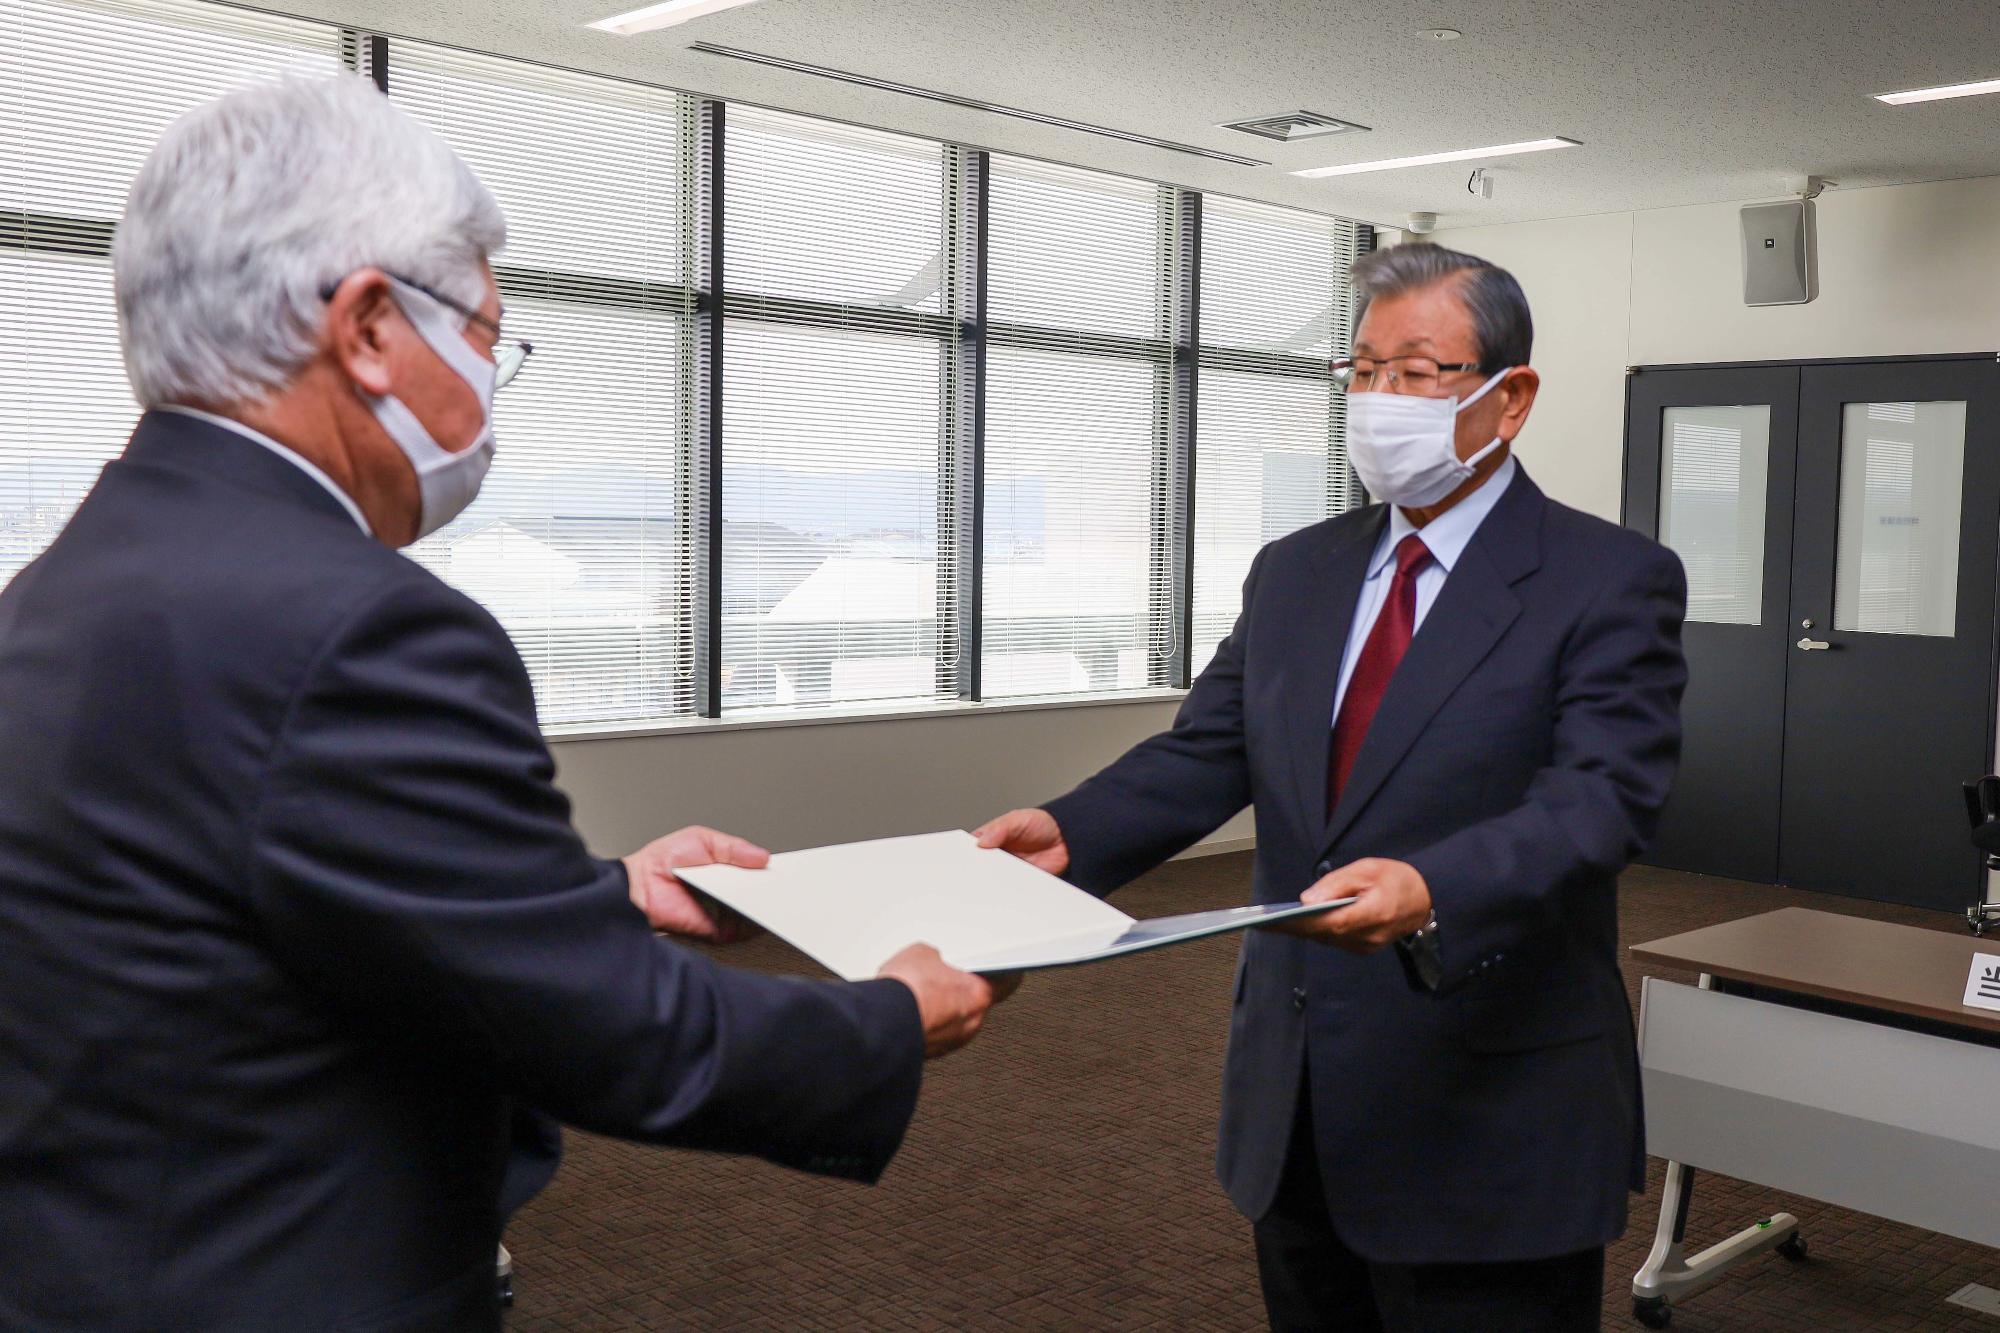 小野市長が当選証書を付与されている様子の写真